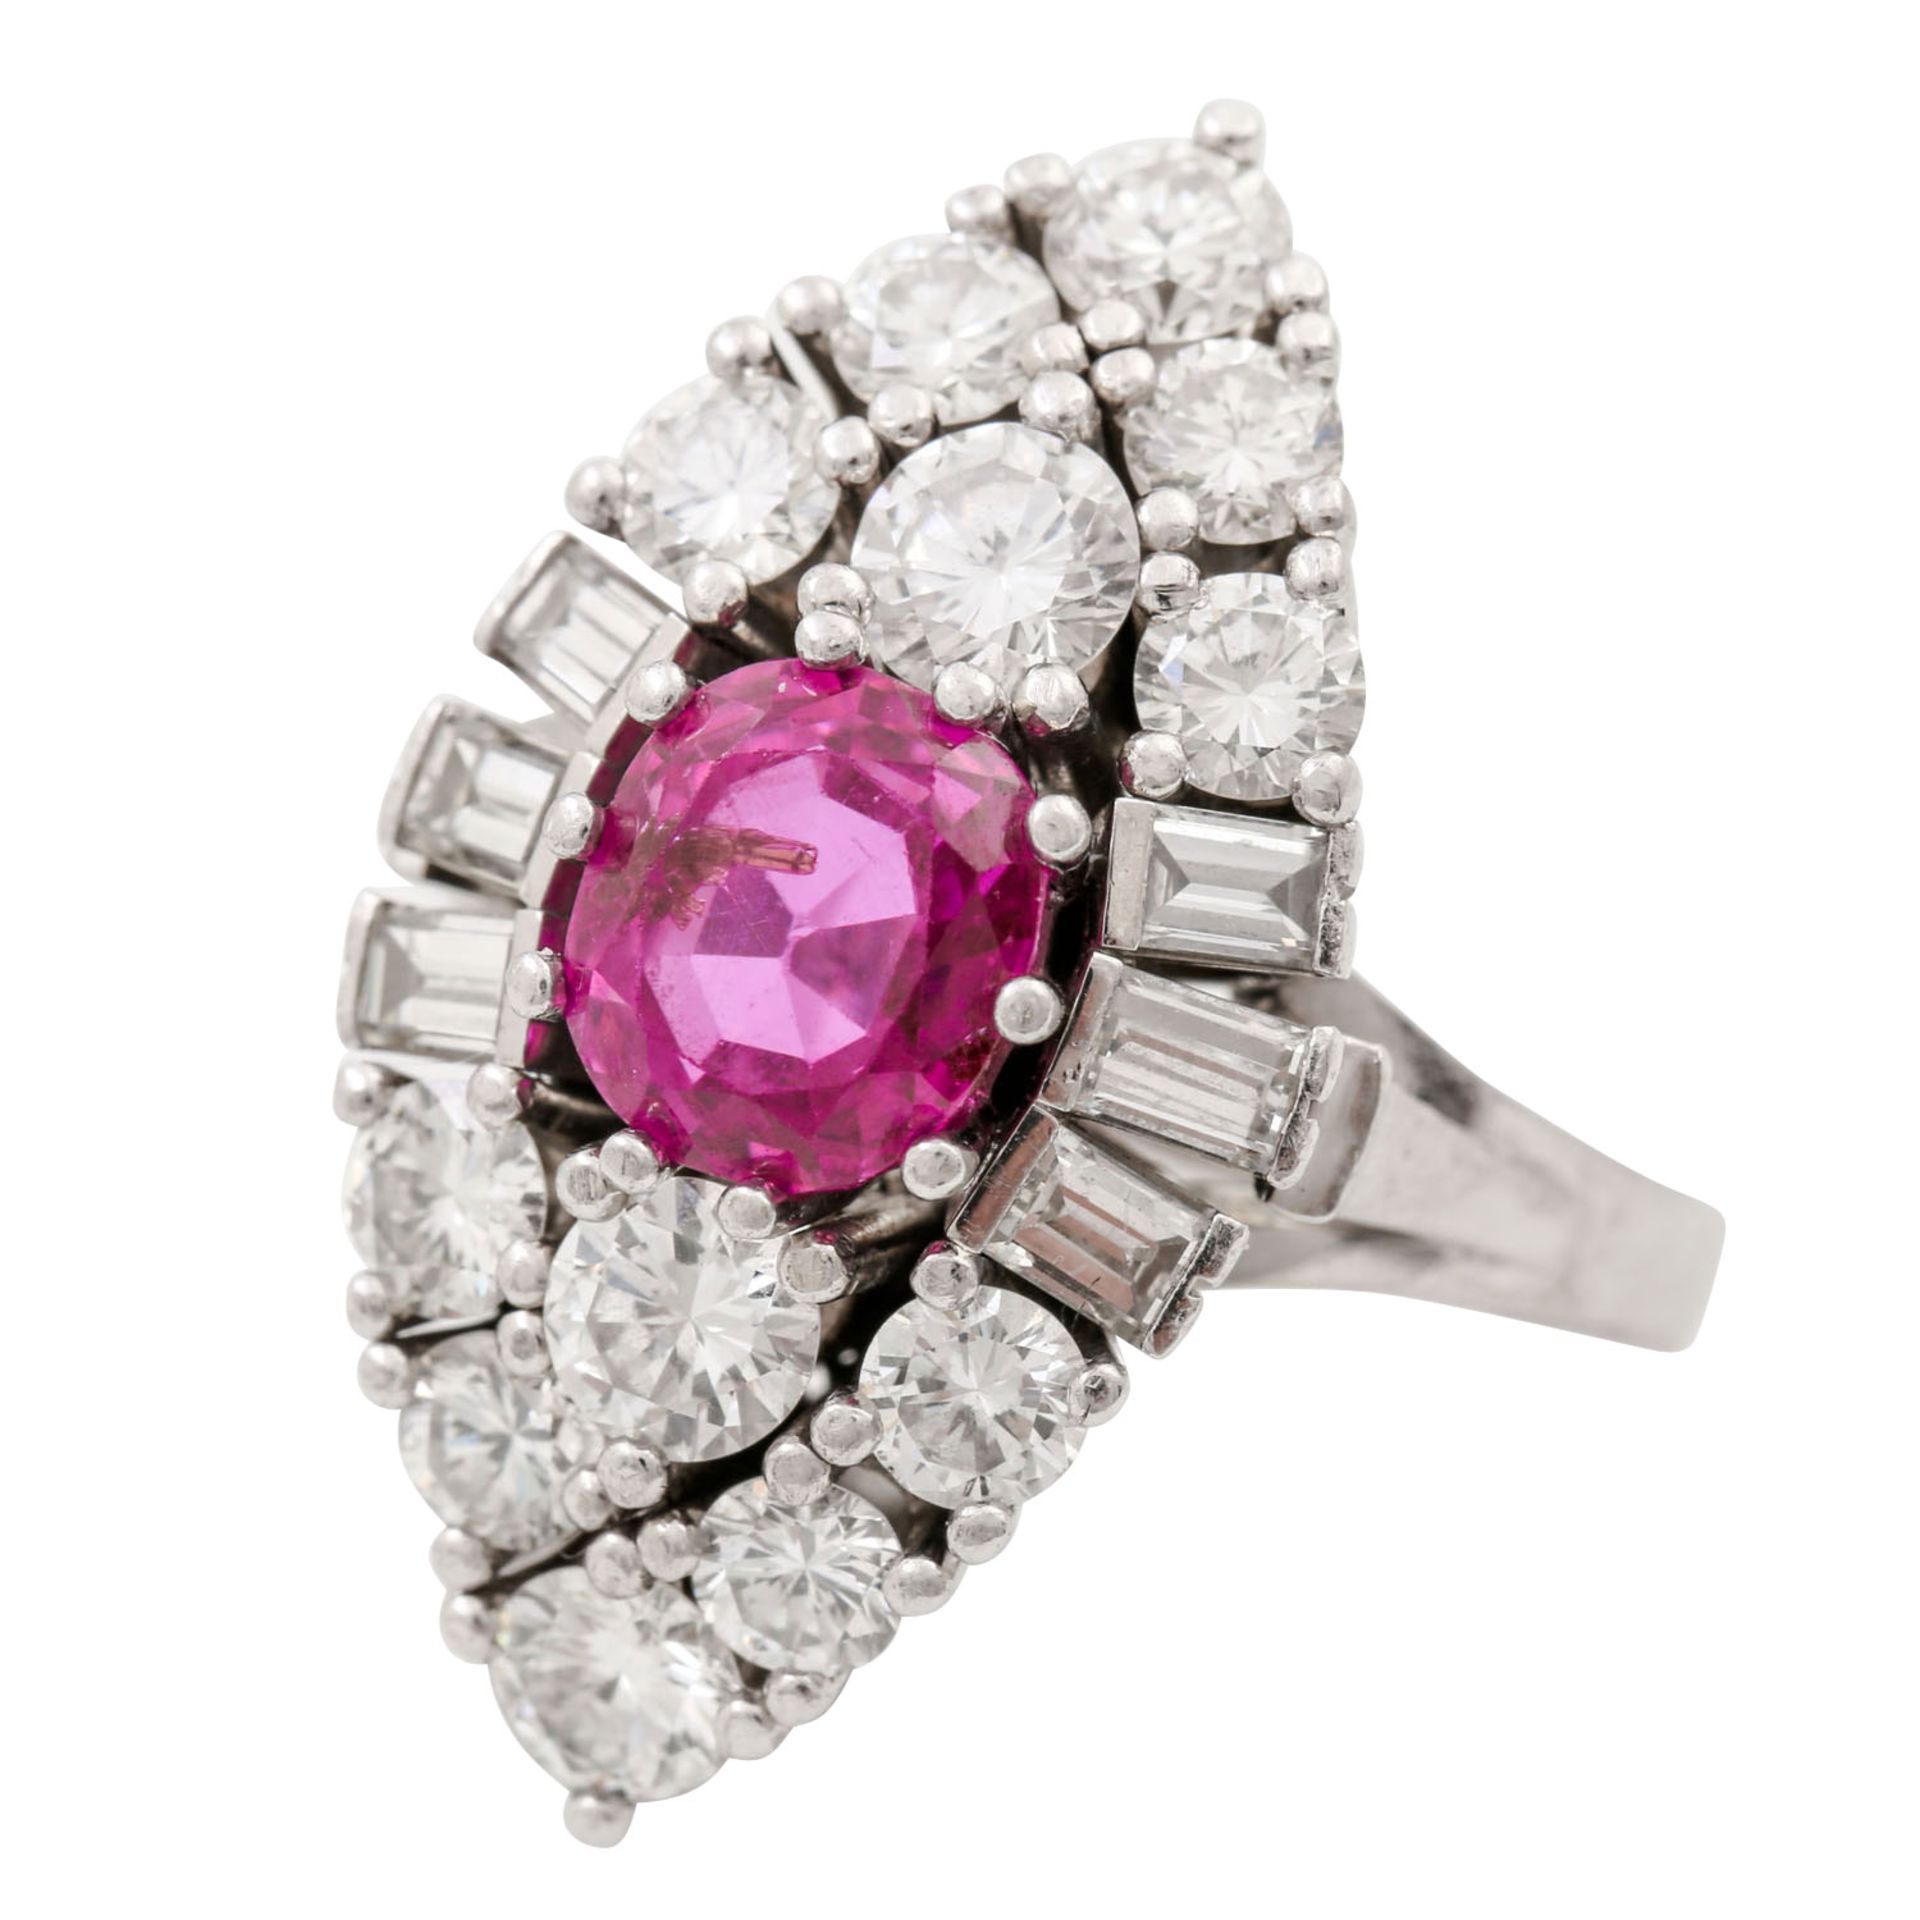 Ring mit pinkfarbenem Saphir ca. 2,5 ct, Brillanten zus. ca. 1,5 ct und Diamantbaguett - Bild 5 aus 5